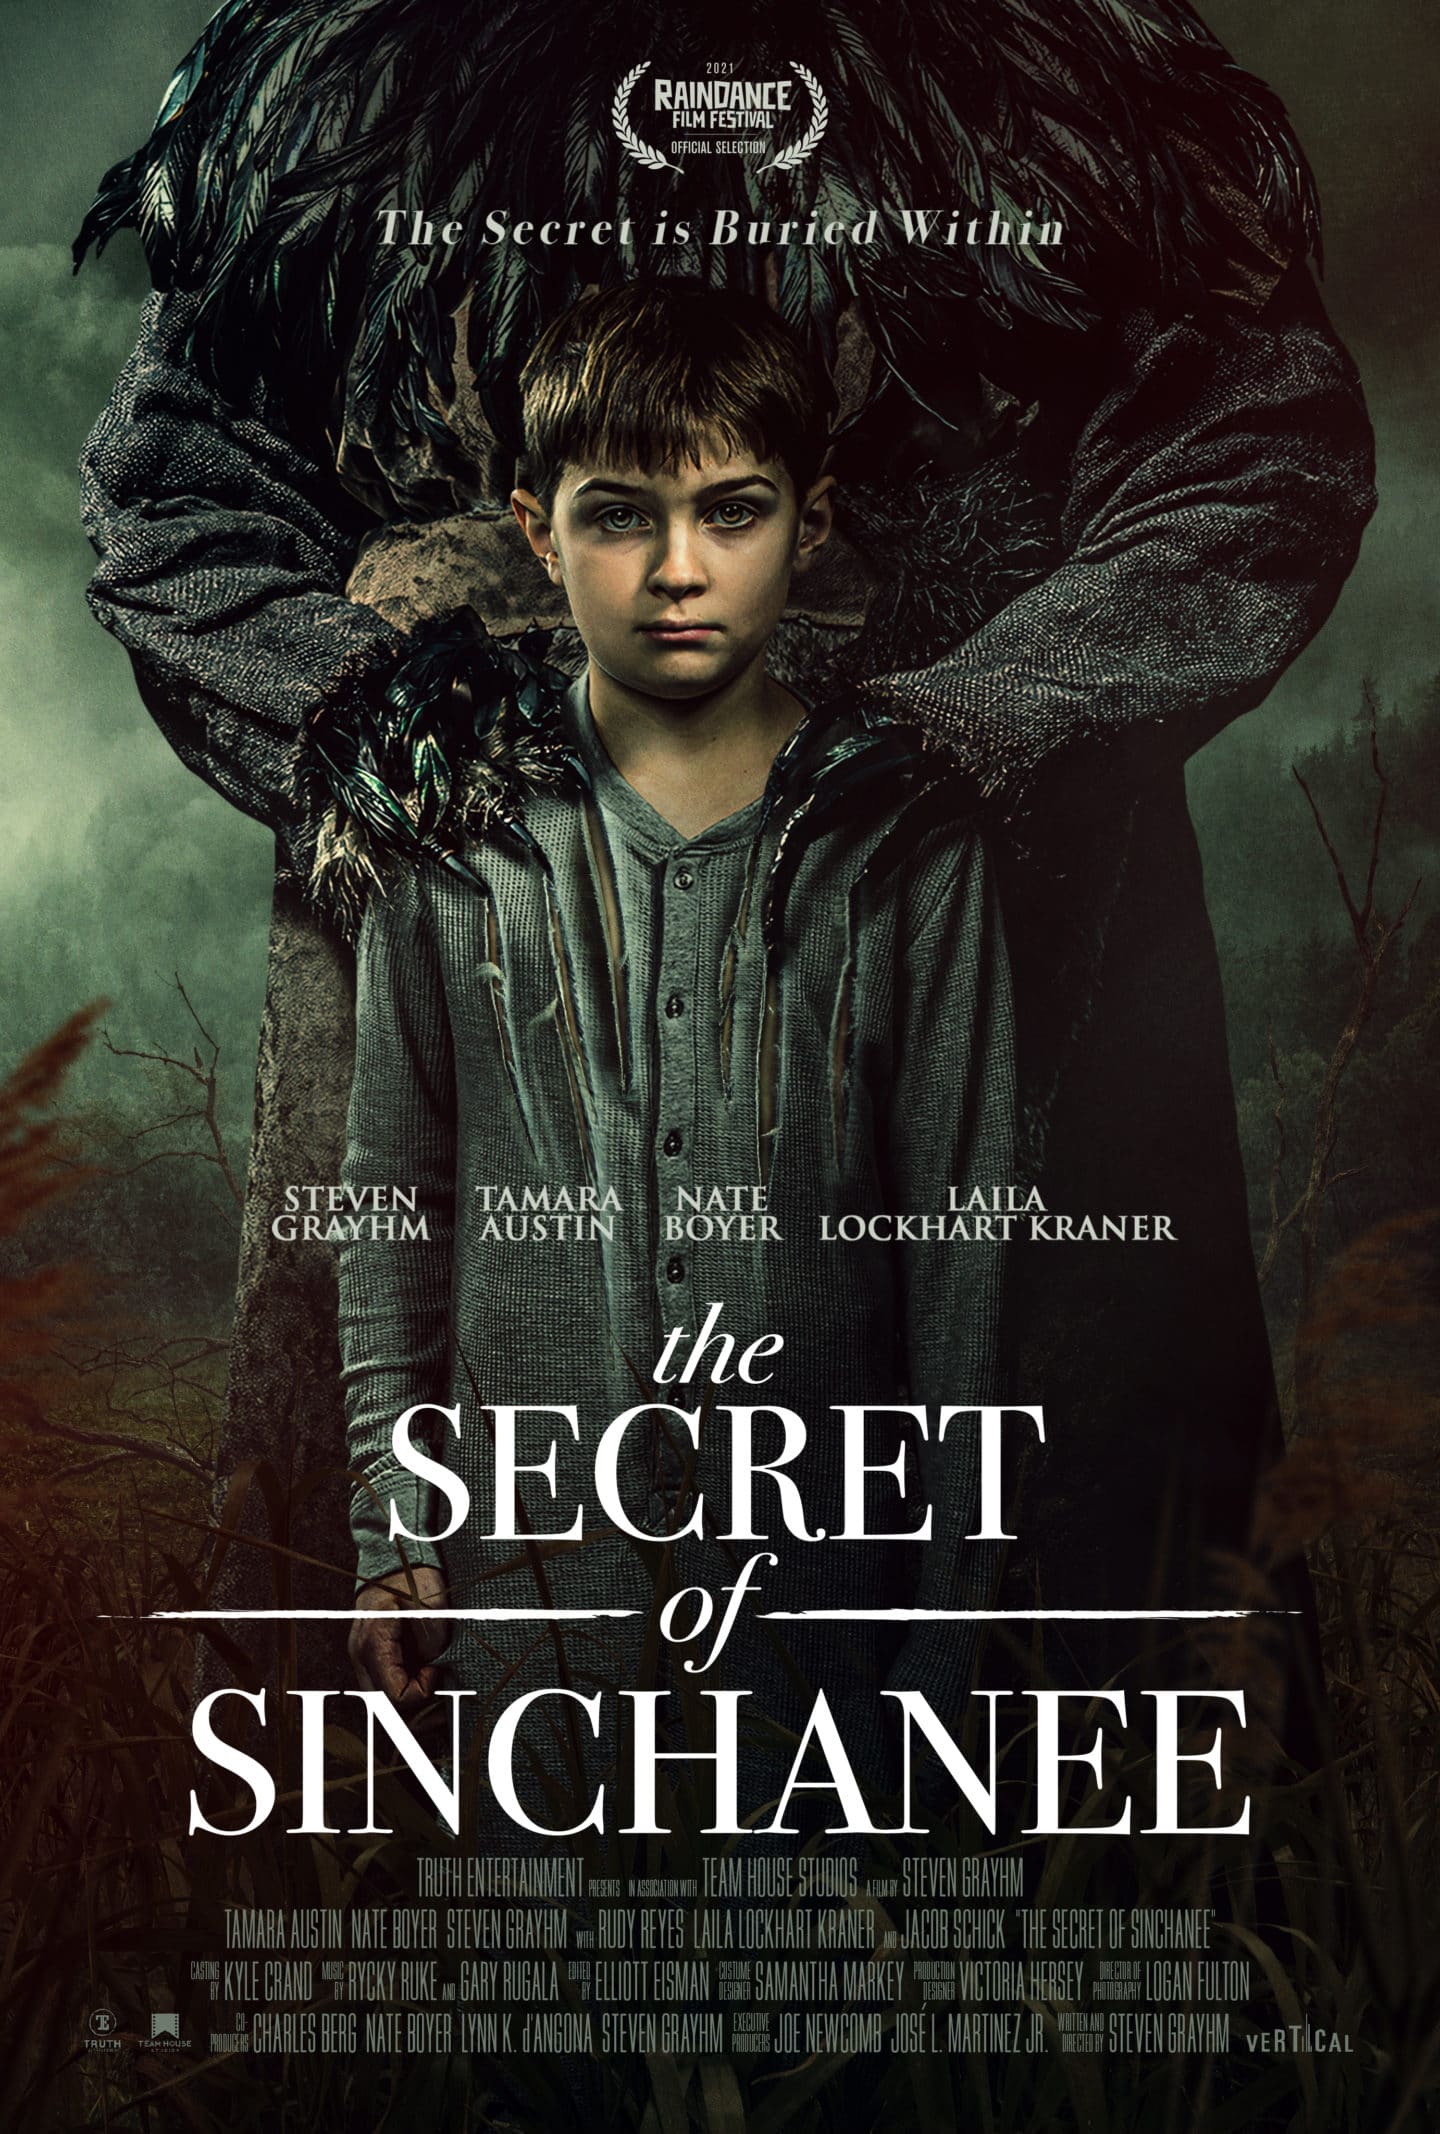 The Secret of Sinchanee - Teaser Poster